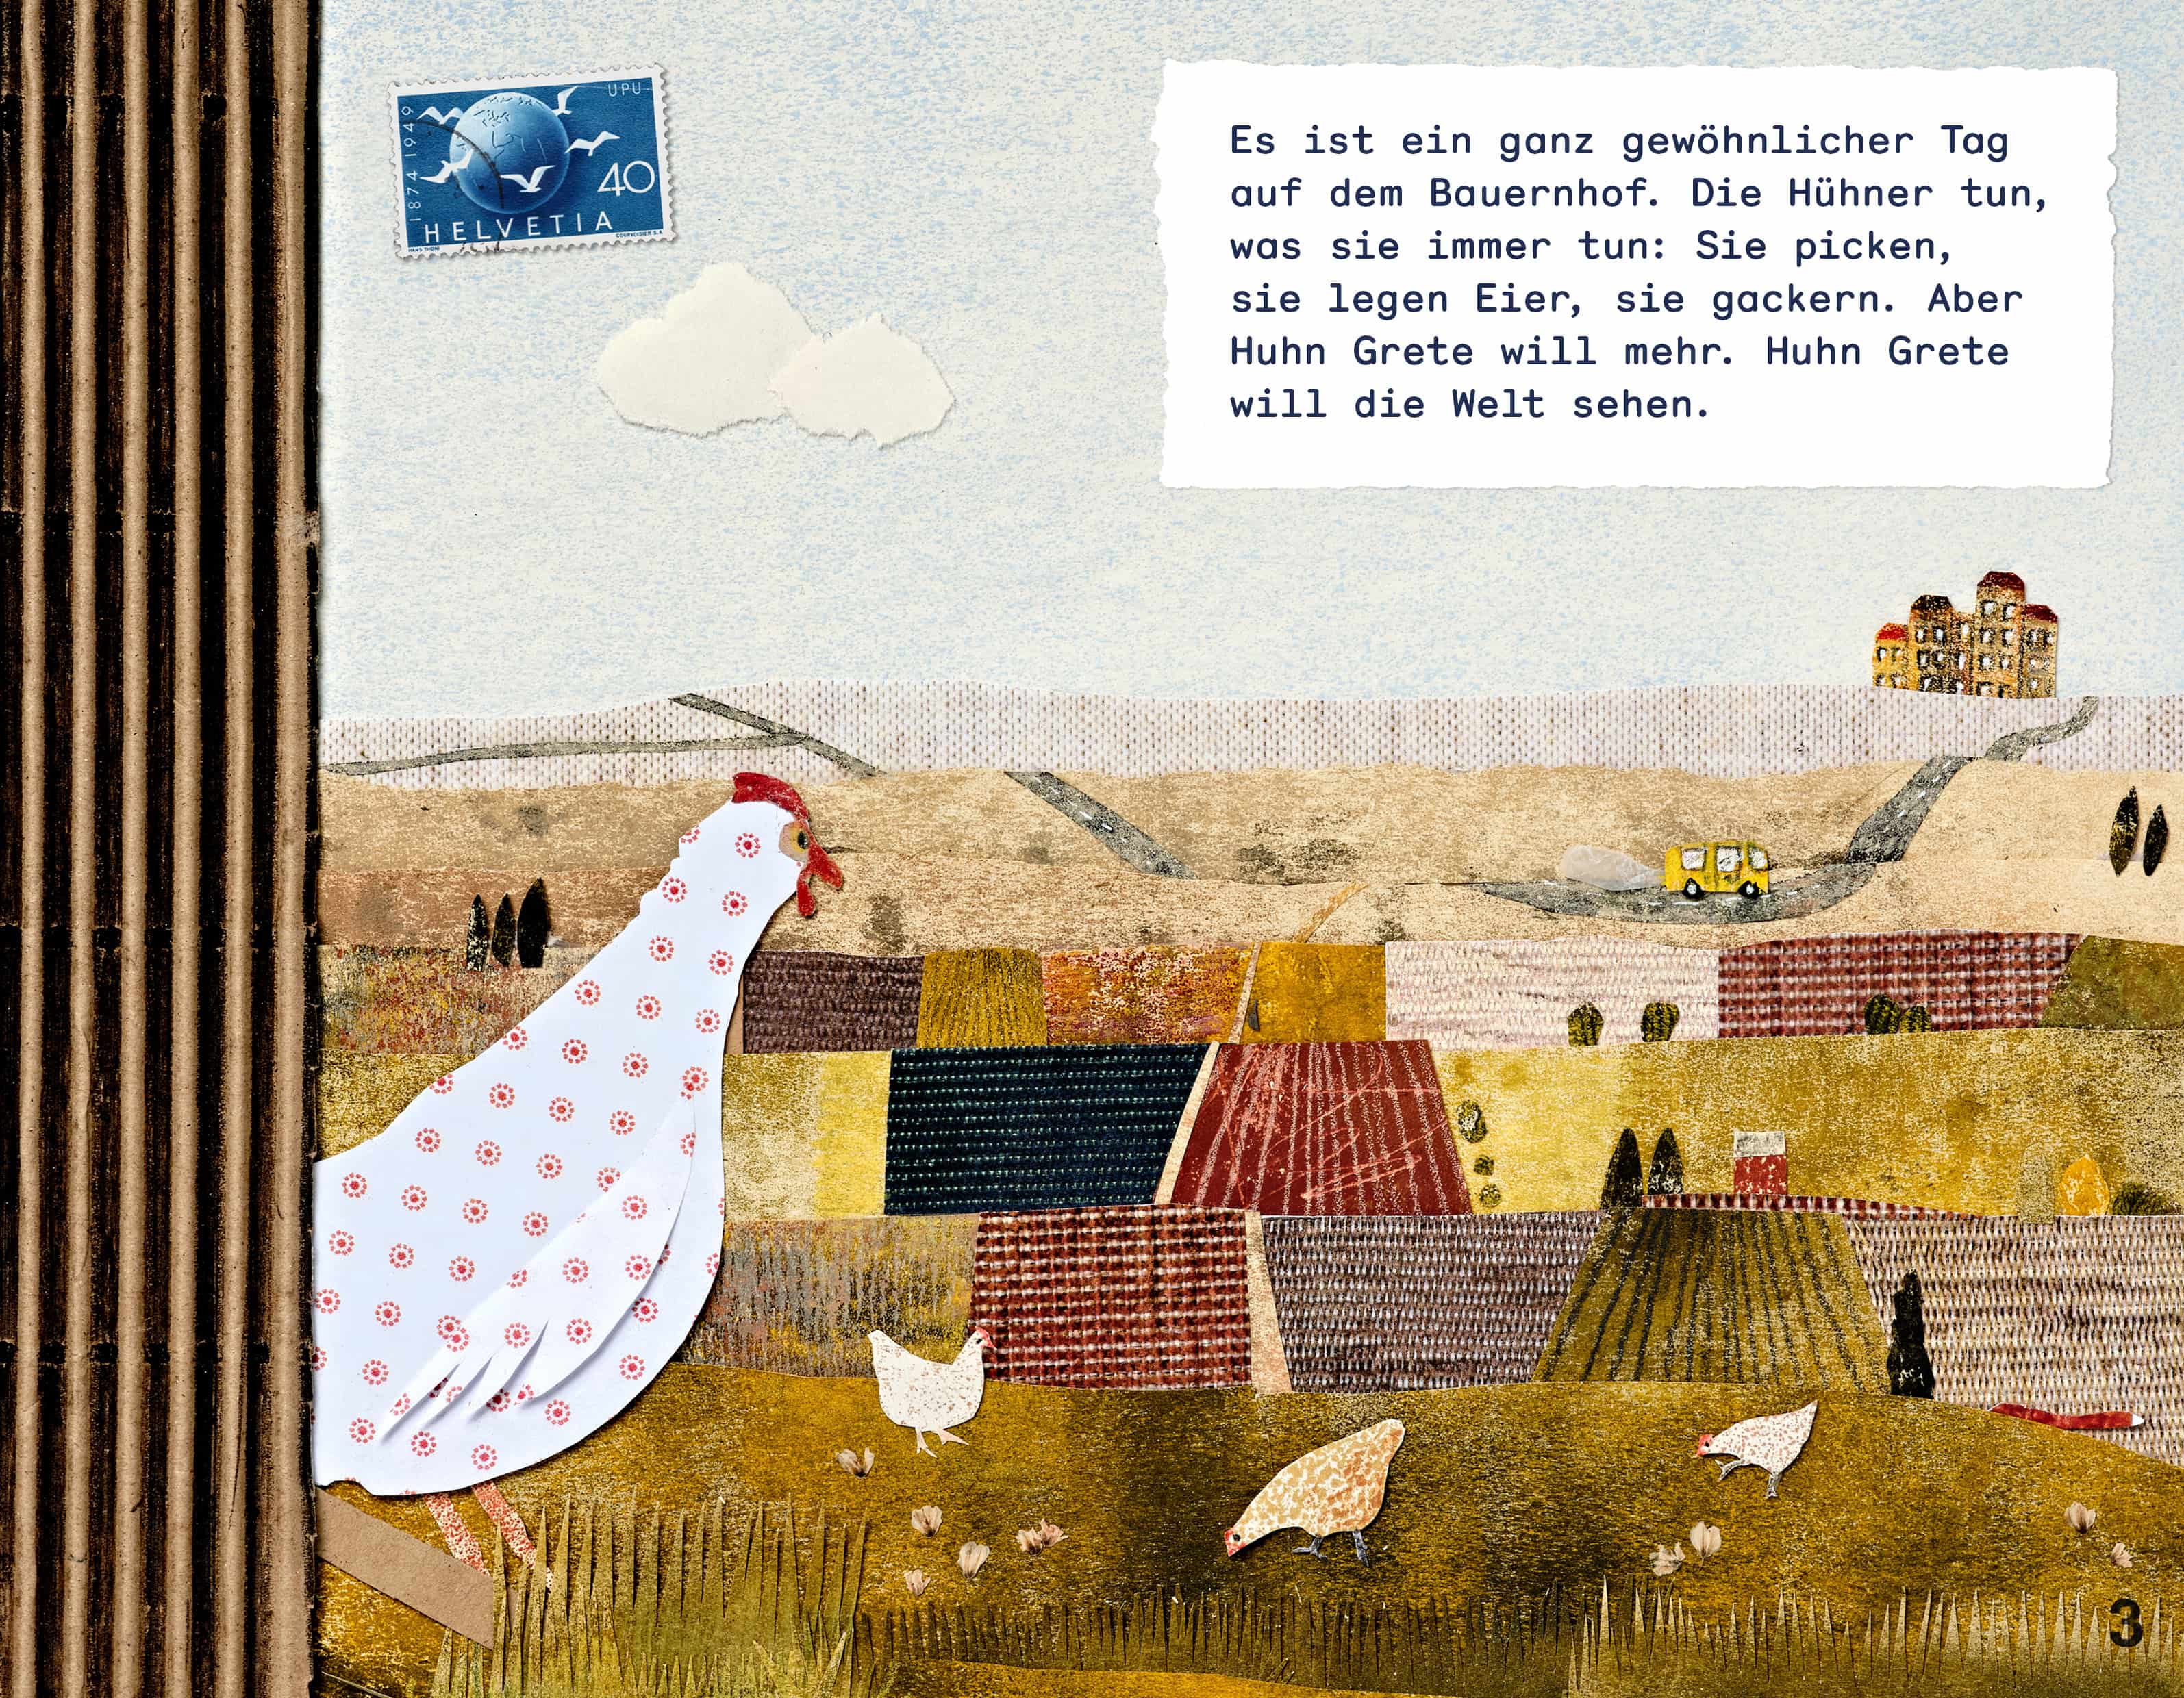 Huhn Grete will die Welt sehen